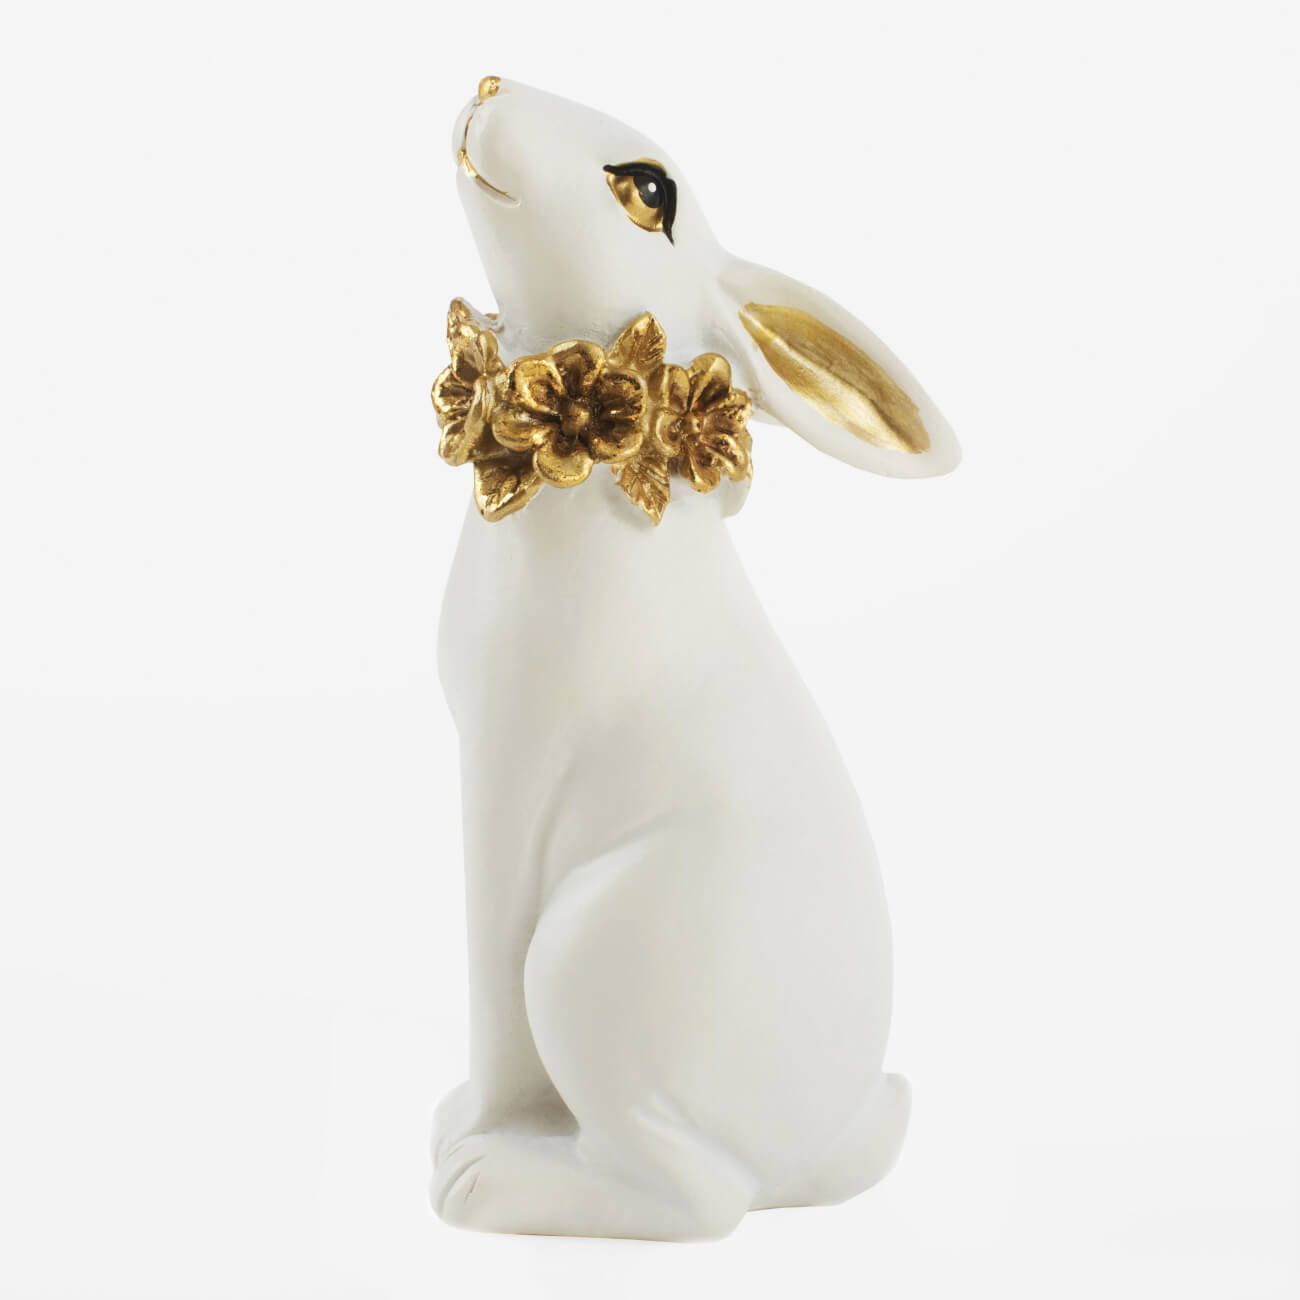 статуэтка 21х14 см полирезин бронзовая бык art modern Статуэтка, 13 см, полирезин, бело-золотистая, Кролик с цветочным ожерельем, Easter gold